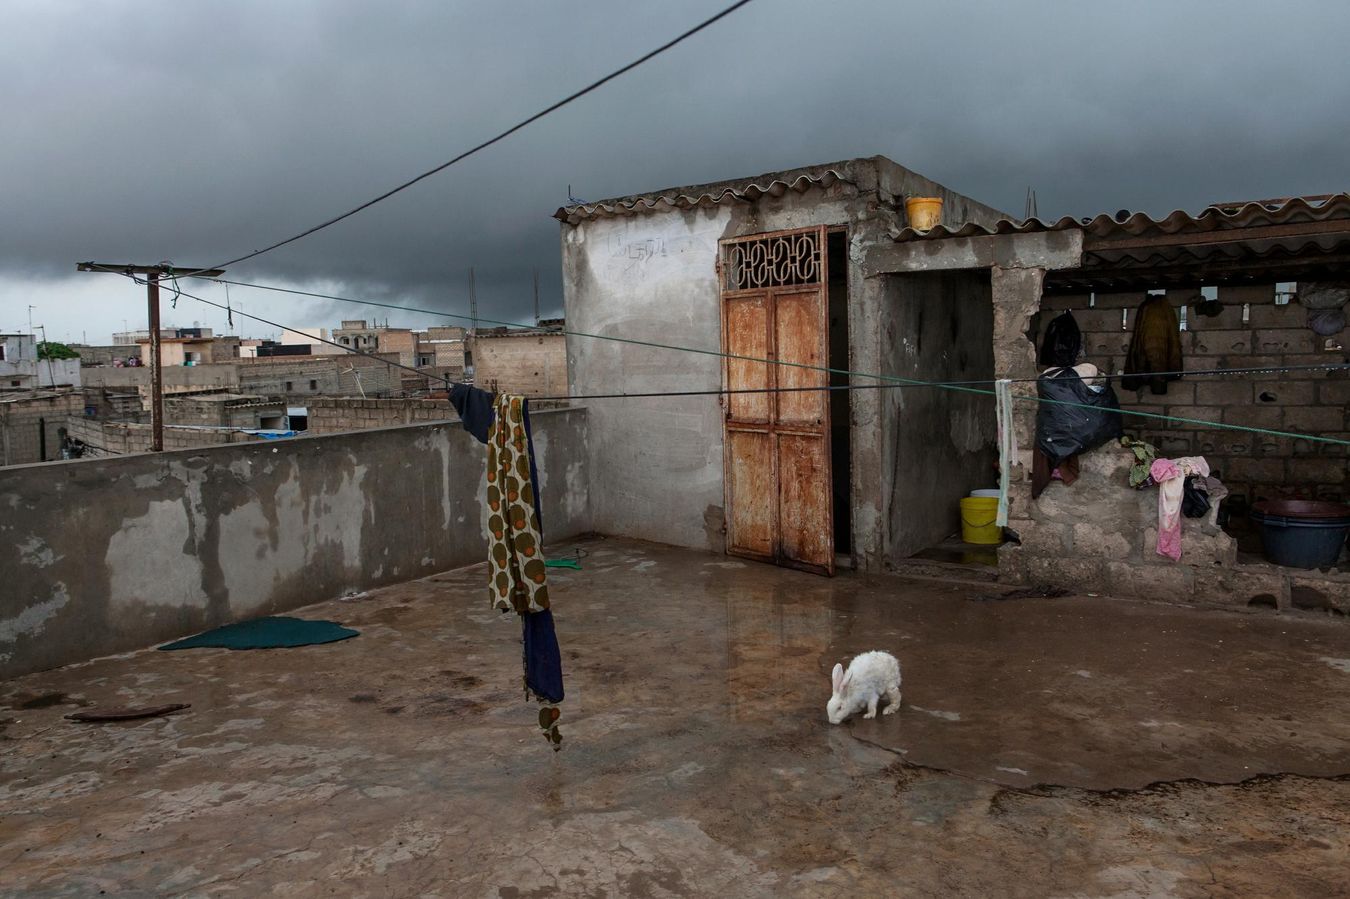 Les experts estiment qu'il faudra encore 5 ou 10 ans au gouvernement sénégalais pour régler les problèmes récurrents, comme les inondations, causés par le changement climatique. En 2013, Flurina Rothenberger, photographe suisse, a remporté un prix au Greenpeace Photo Award.